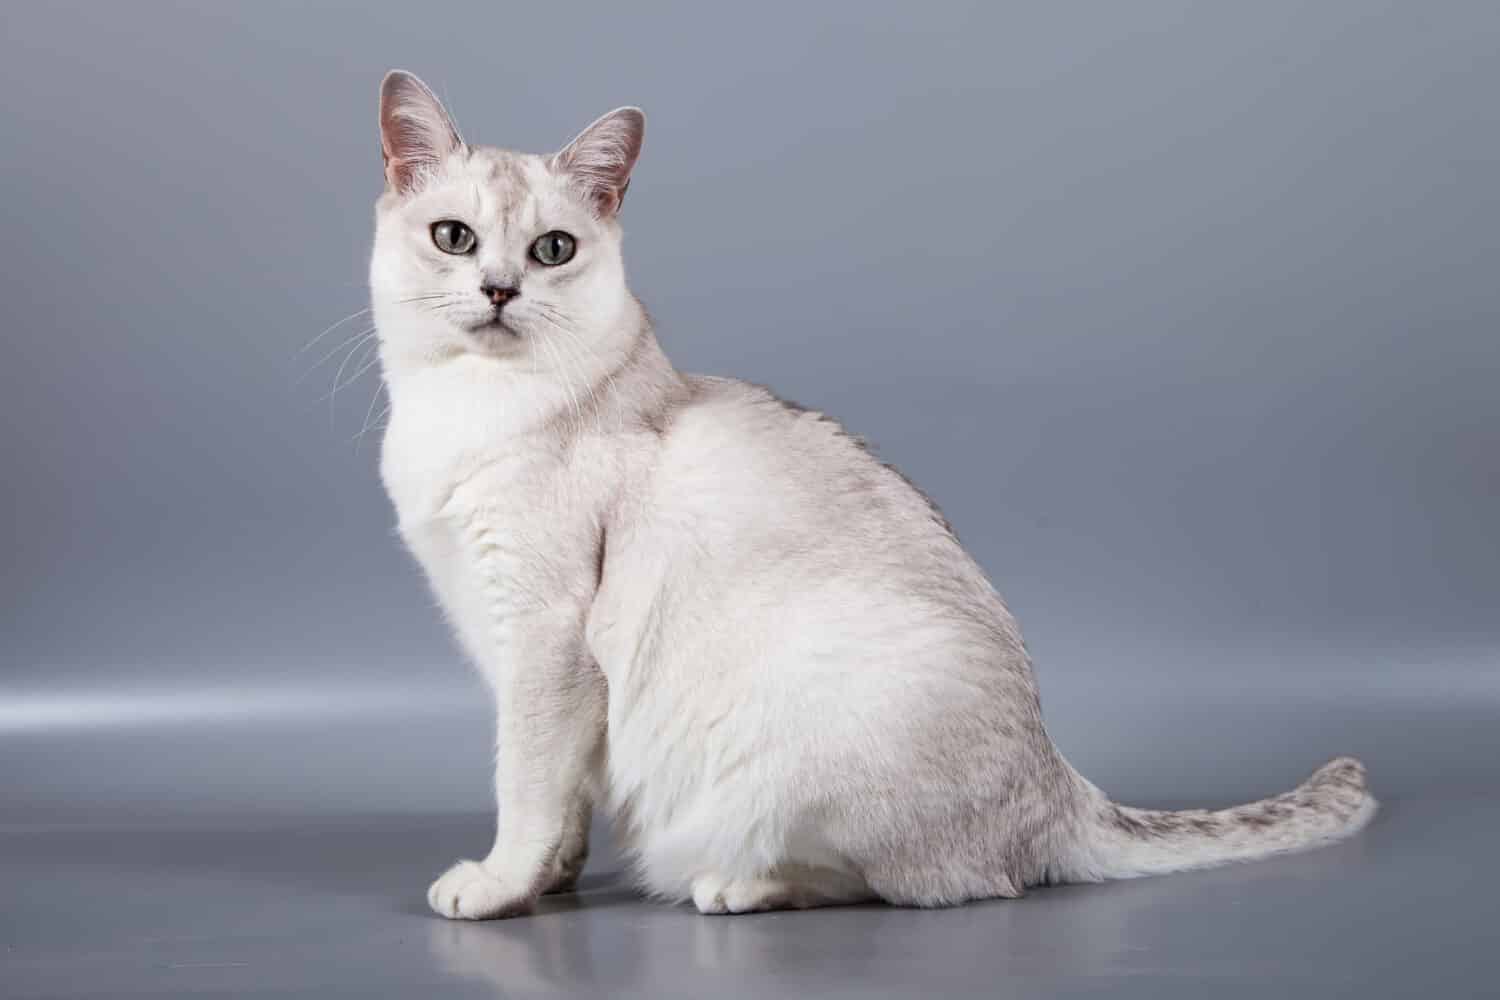 Il gatto di razza Burmilla a pelo corto bianco si siede su sfondo grigio